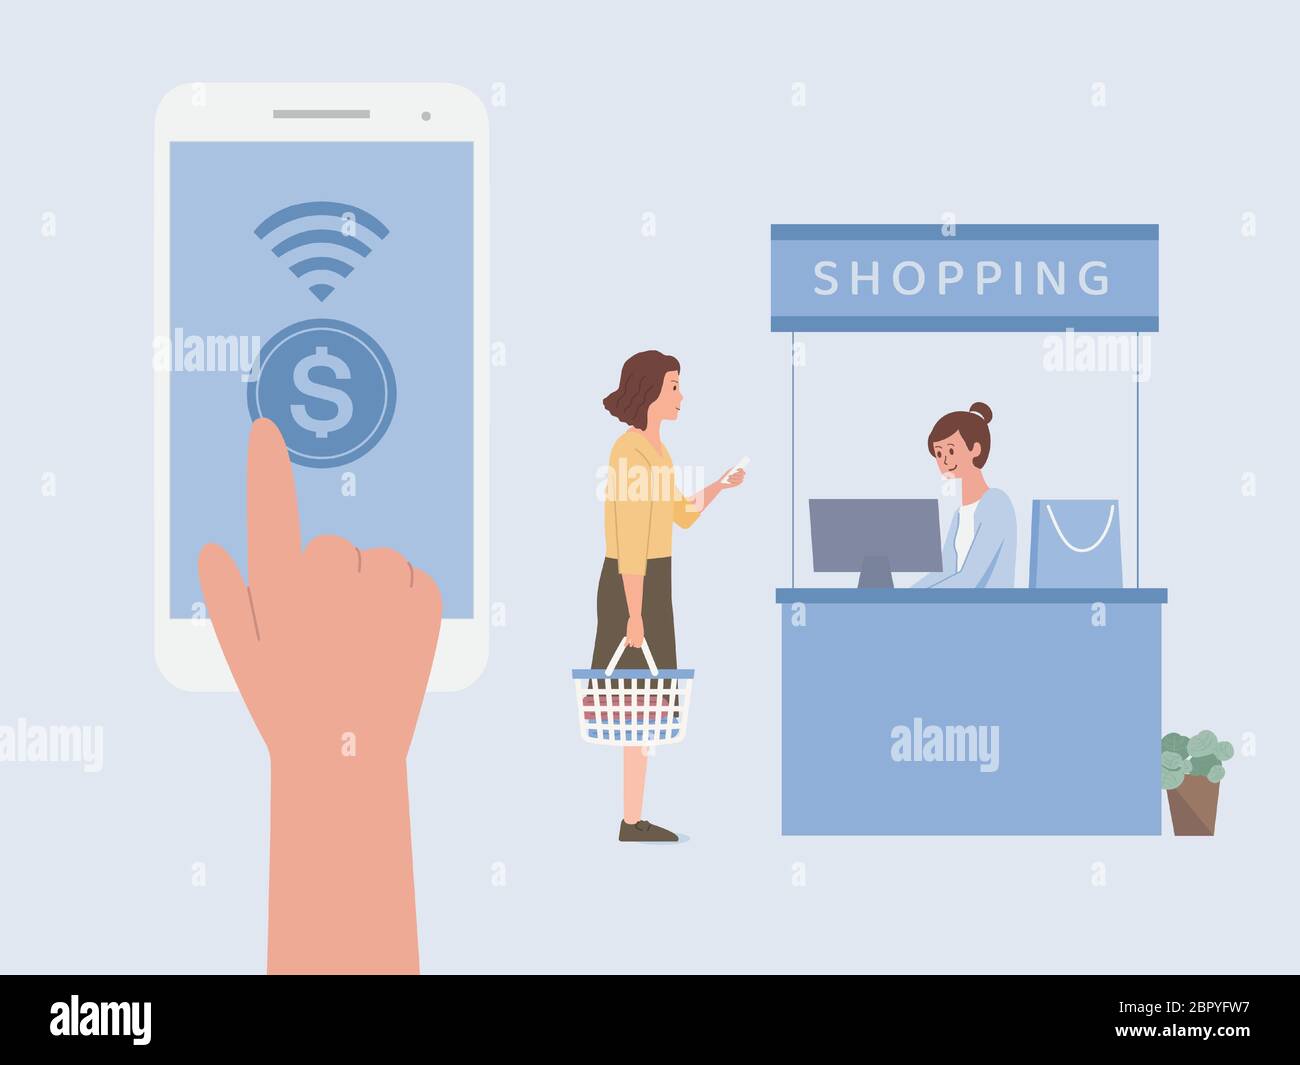 Ein Fingerdruck auf dem mobilen Bildschirm für die Online-Zahlung, um Geld vor der Kasse eines Einkaufszentrums zu bezahlen. Stock Vektor